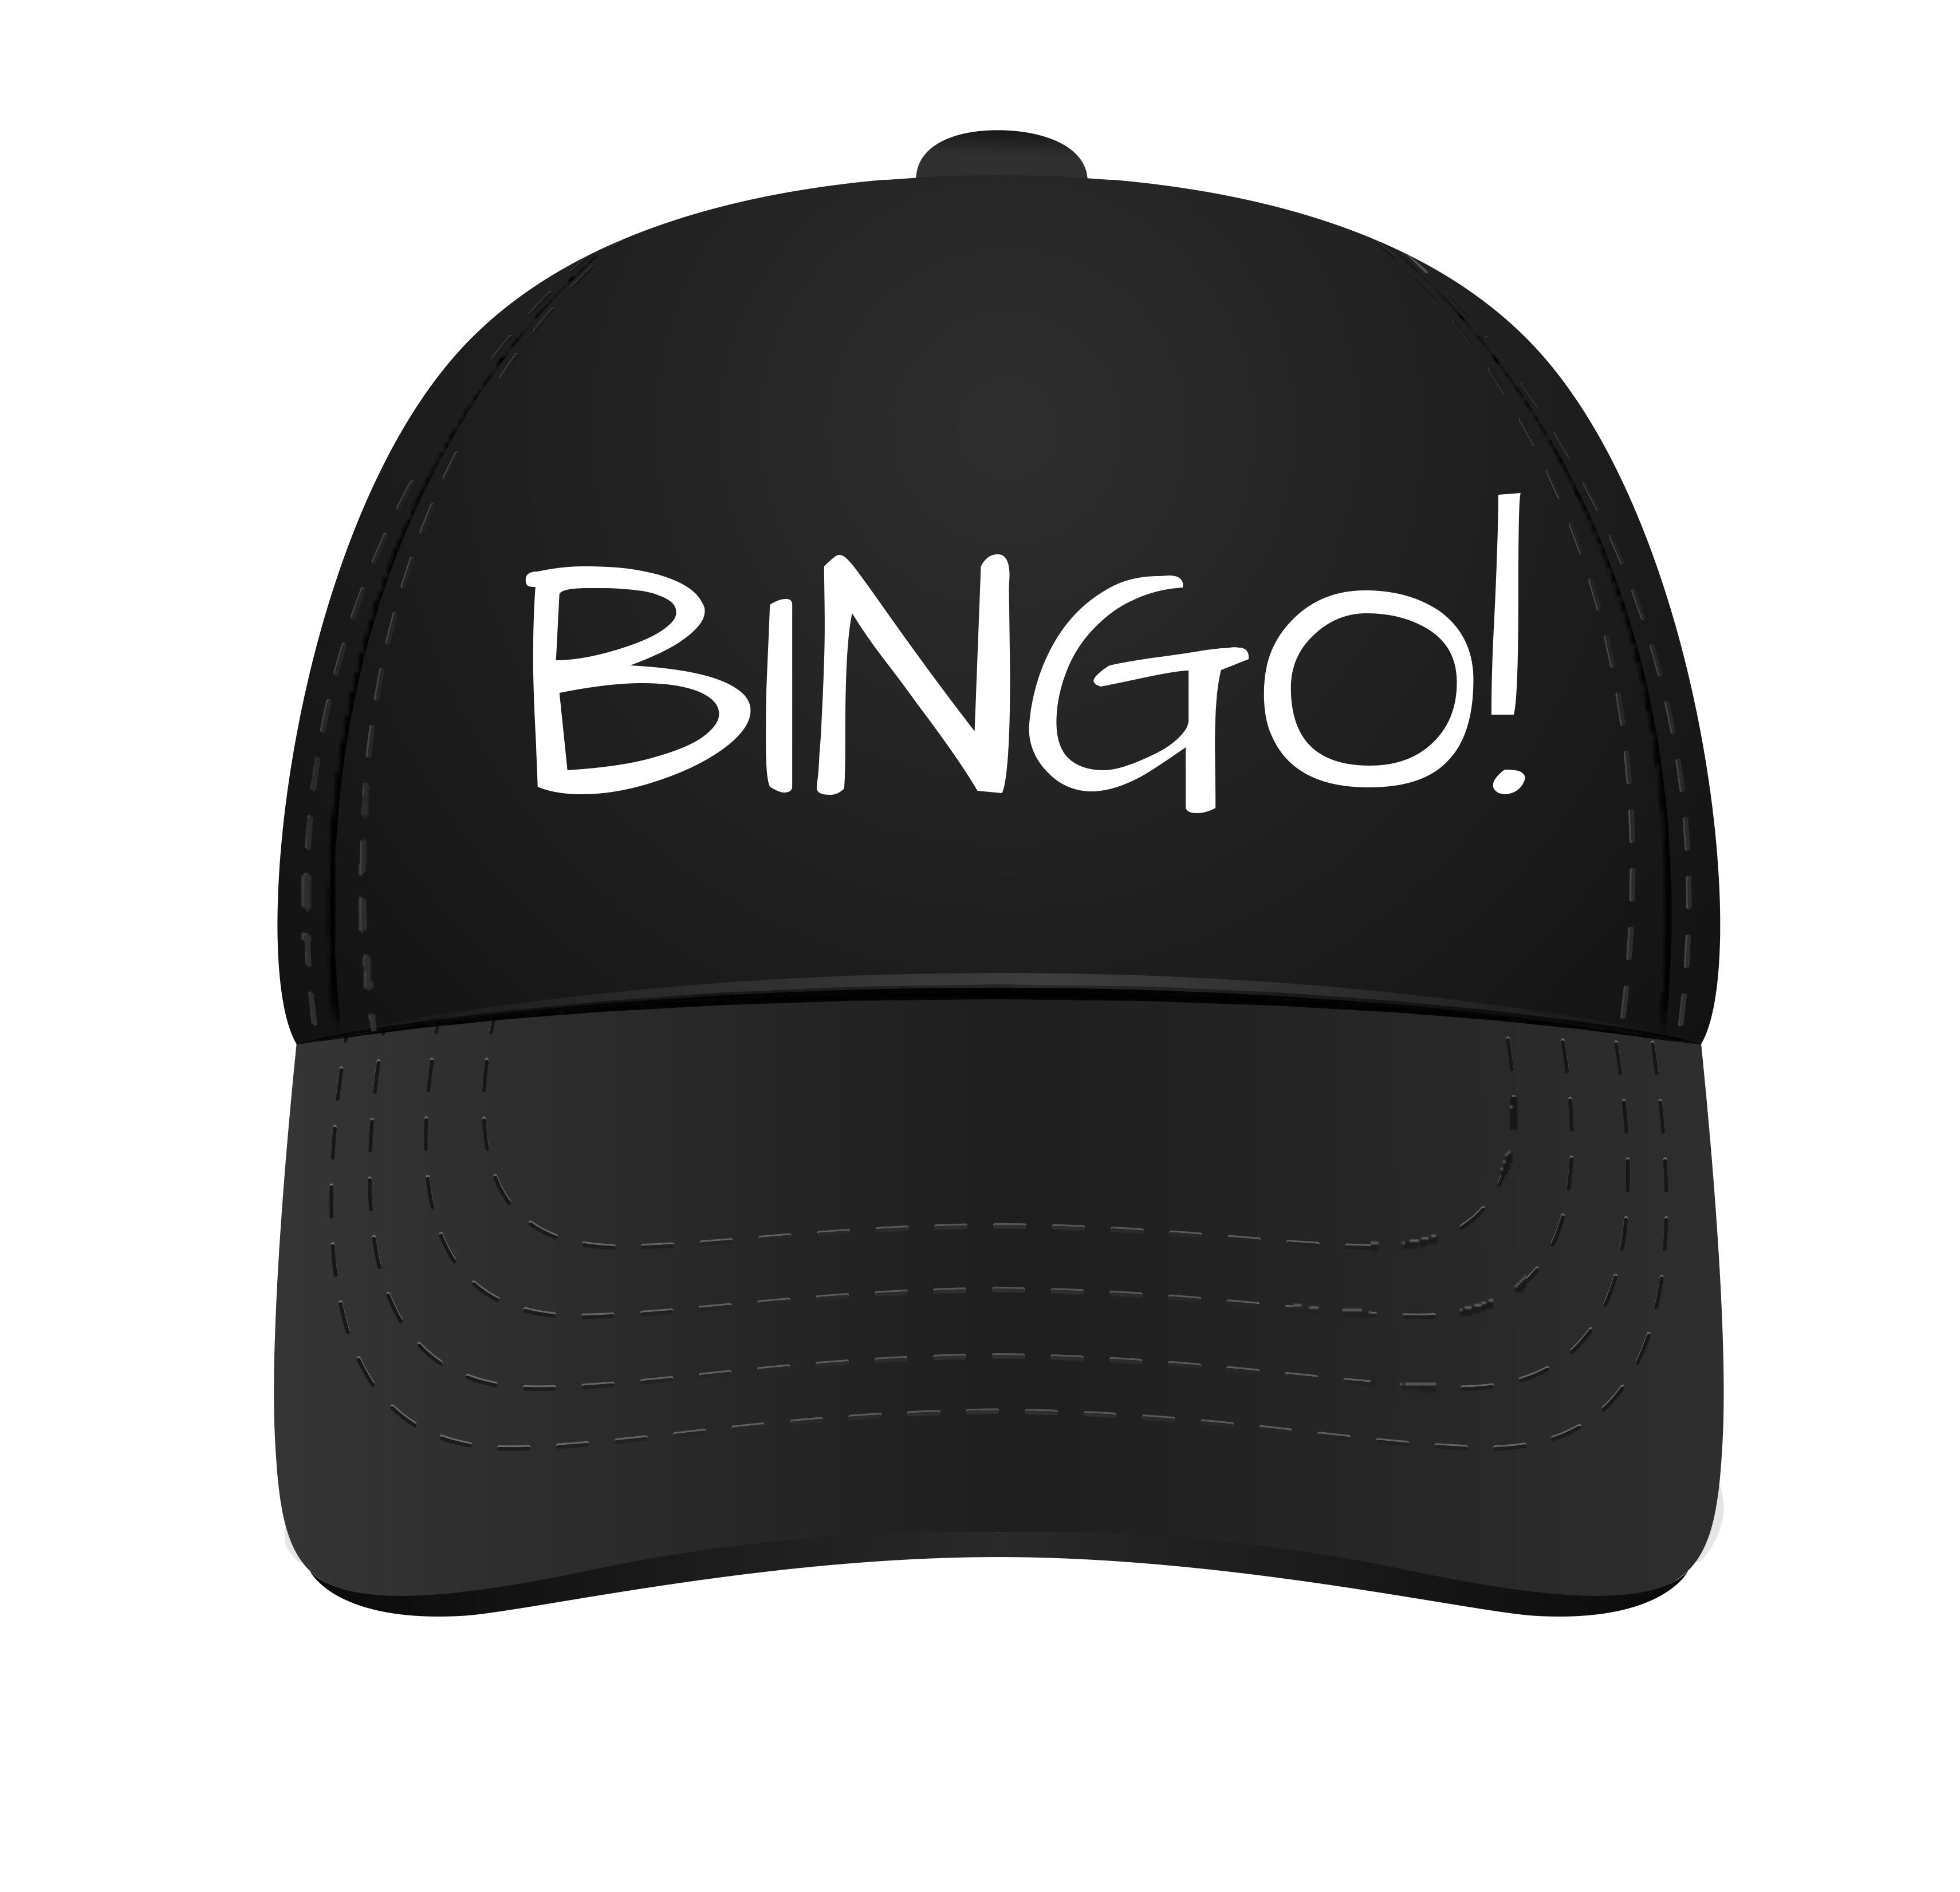 Bingo pet pet voor de bingo leuk kado voor de bingo deze bingo pet